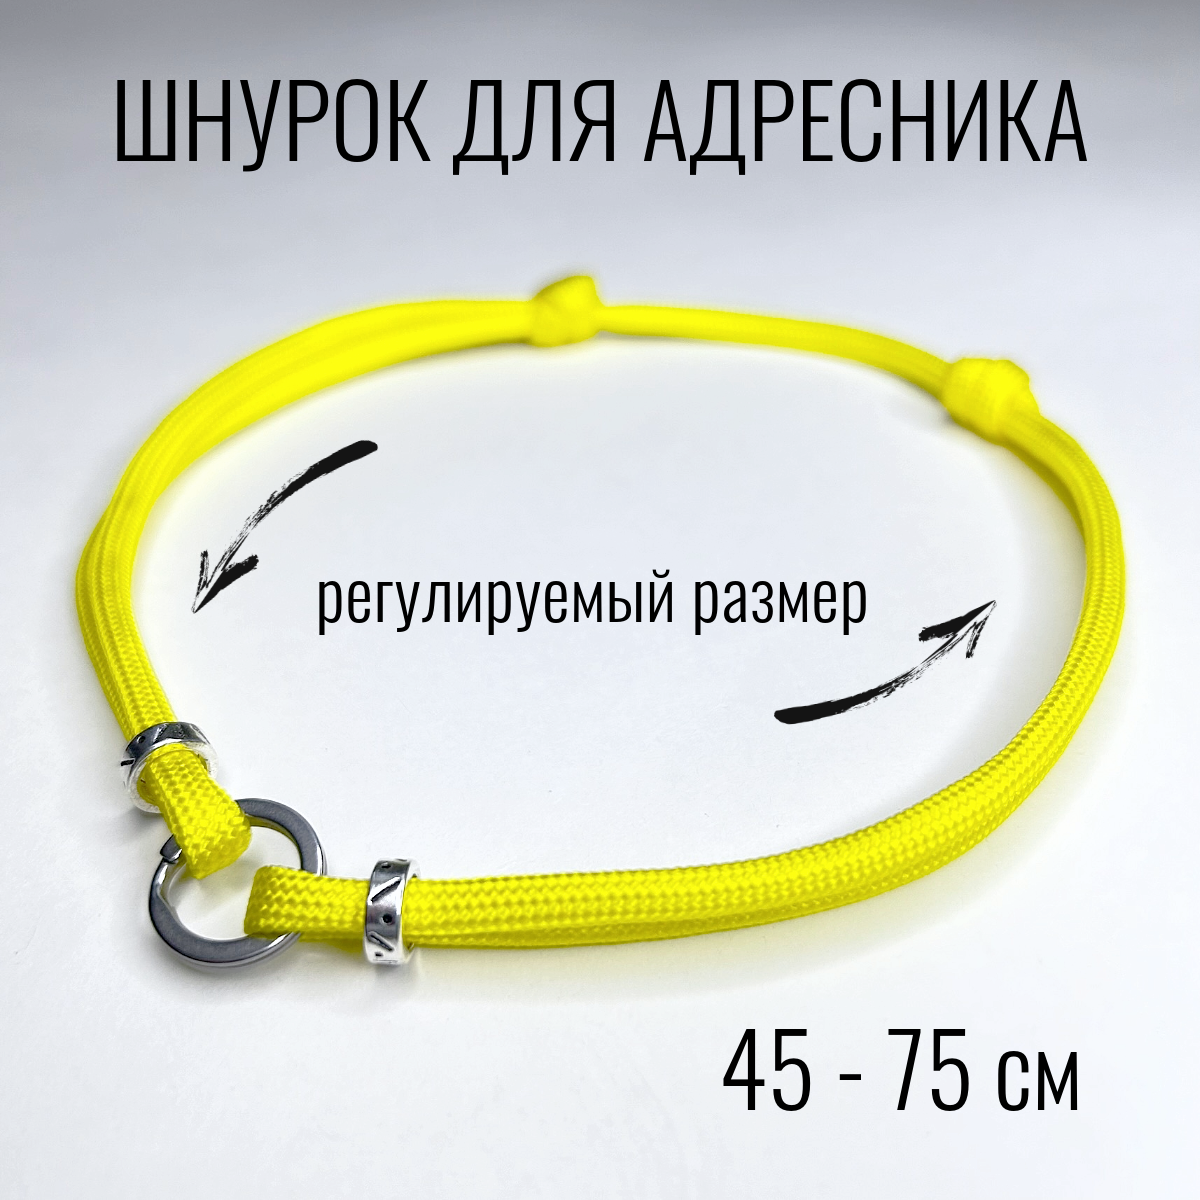 Шнурок для адресника Shani Workshop для собак, с кольцом и бусинами, желтый, 45-75 см